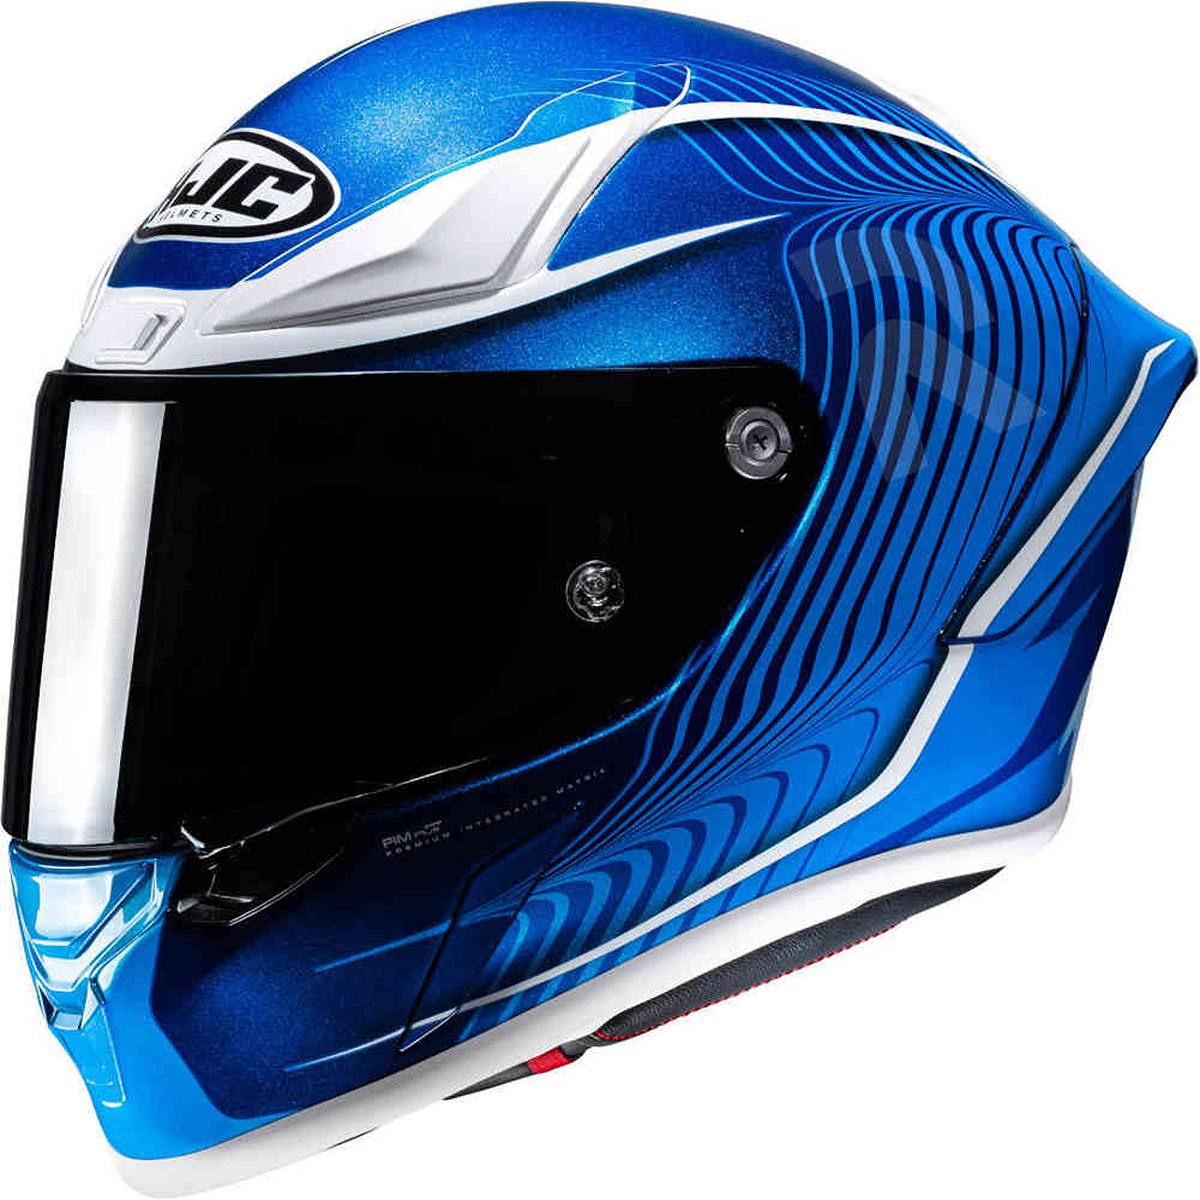 Image of HJC RPHA 1 Lovis Blue White Full Face Helmet Size XL ID 8804269475270